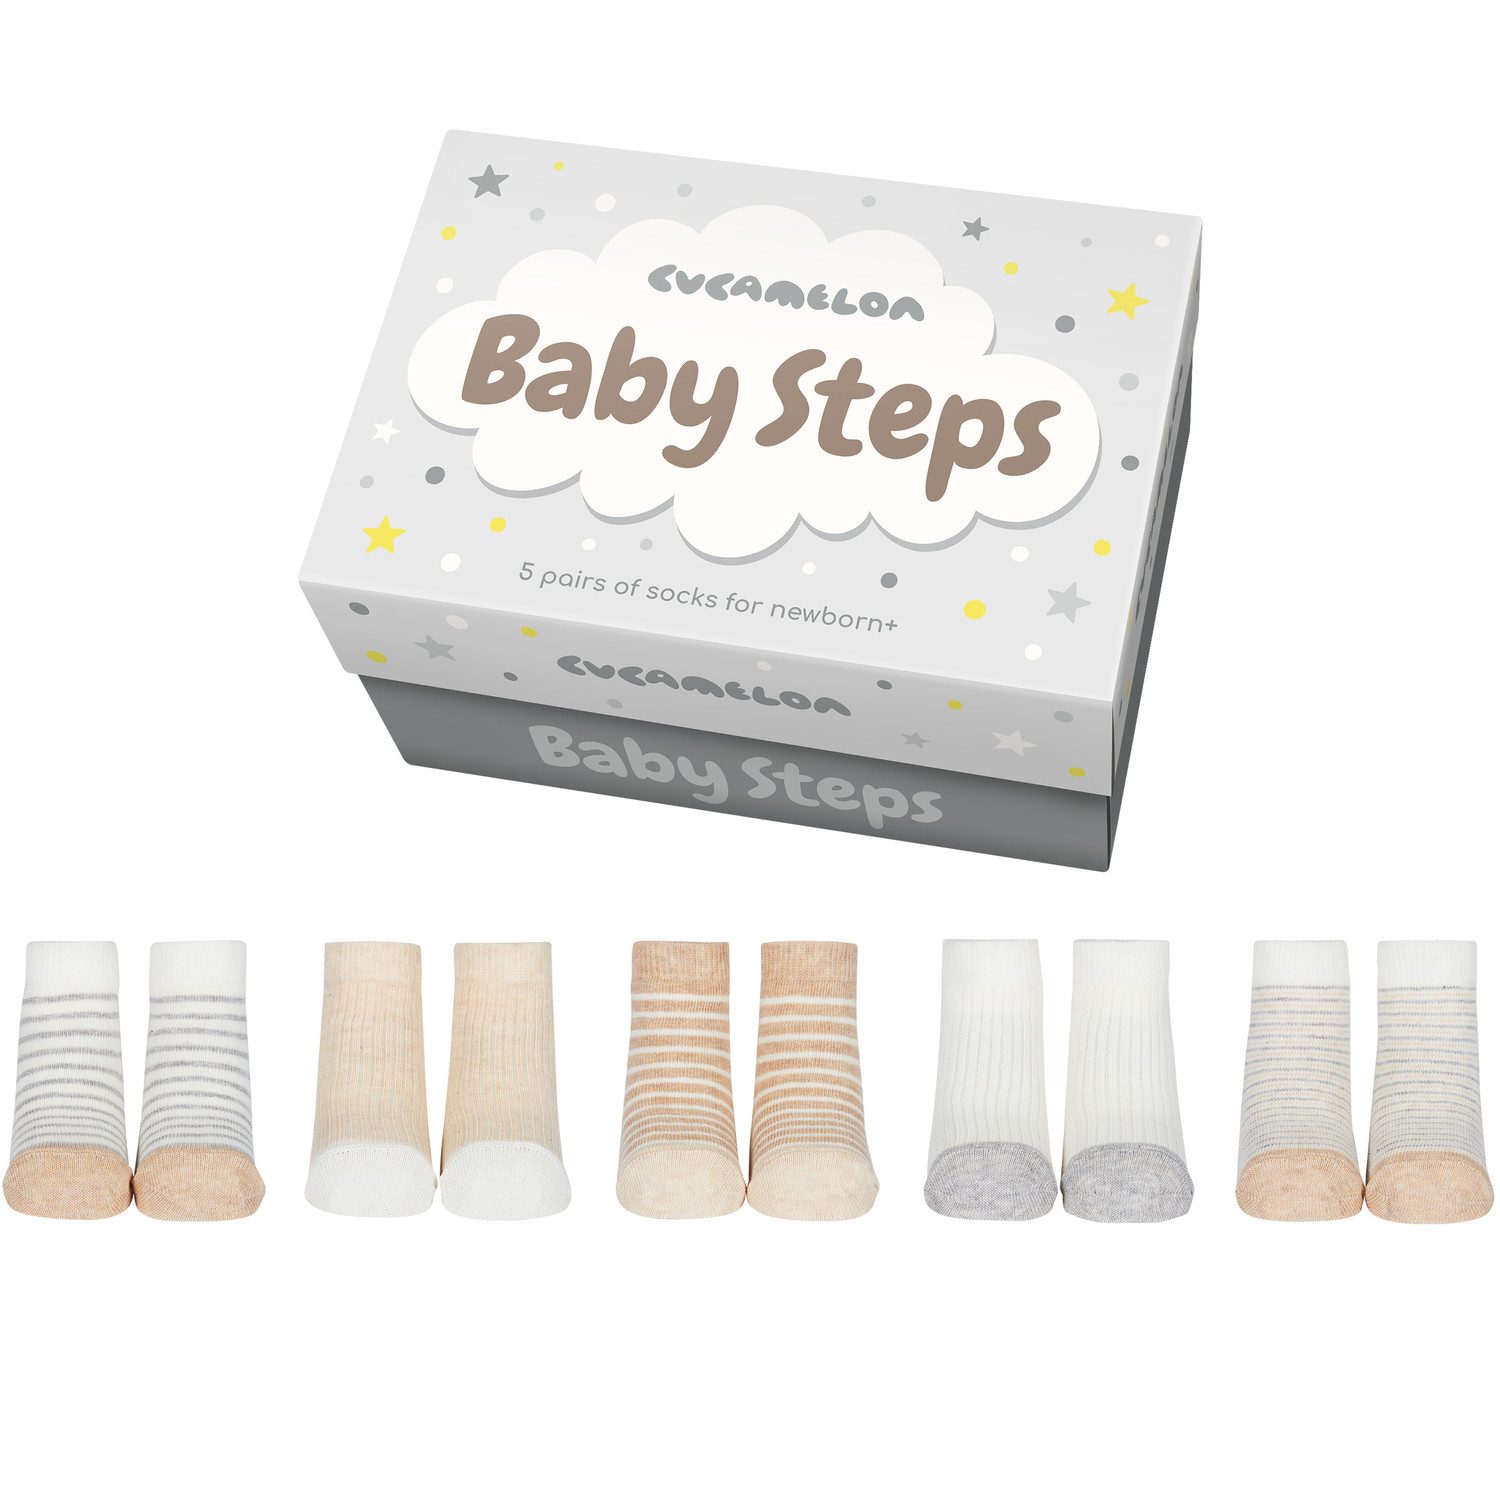 United Oddsocks Freizeitsocken Baby Steps Cucamelon Socken für Babys (5 Paar)